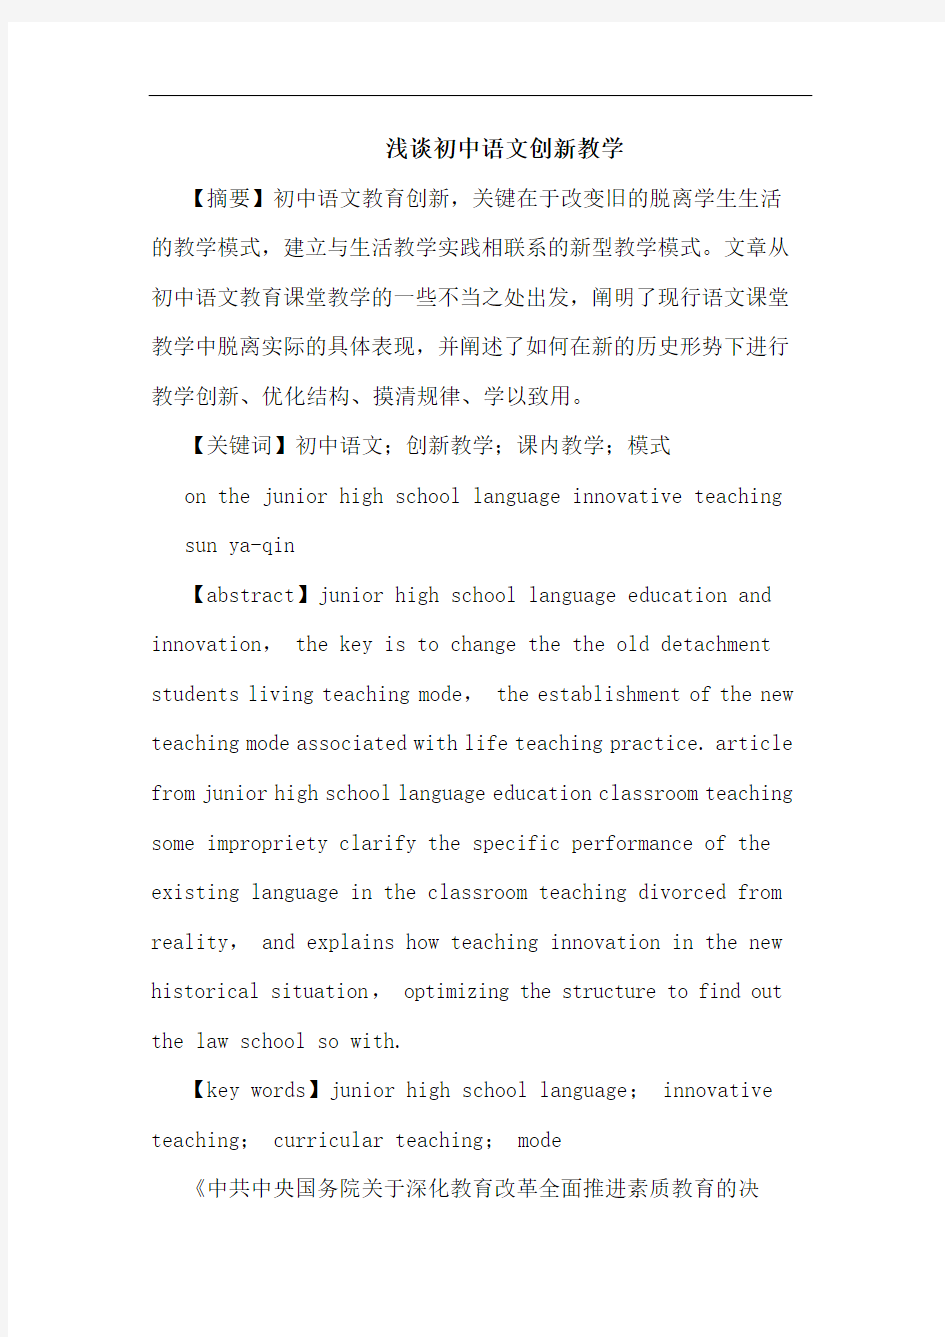 初中语文创新教学